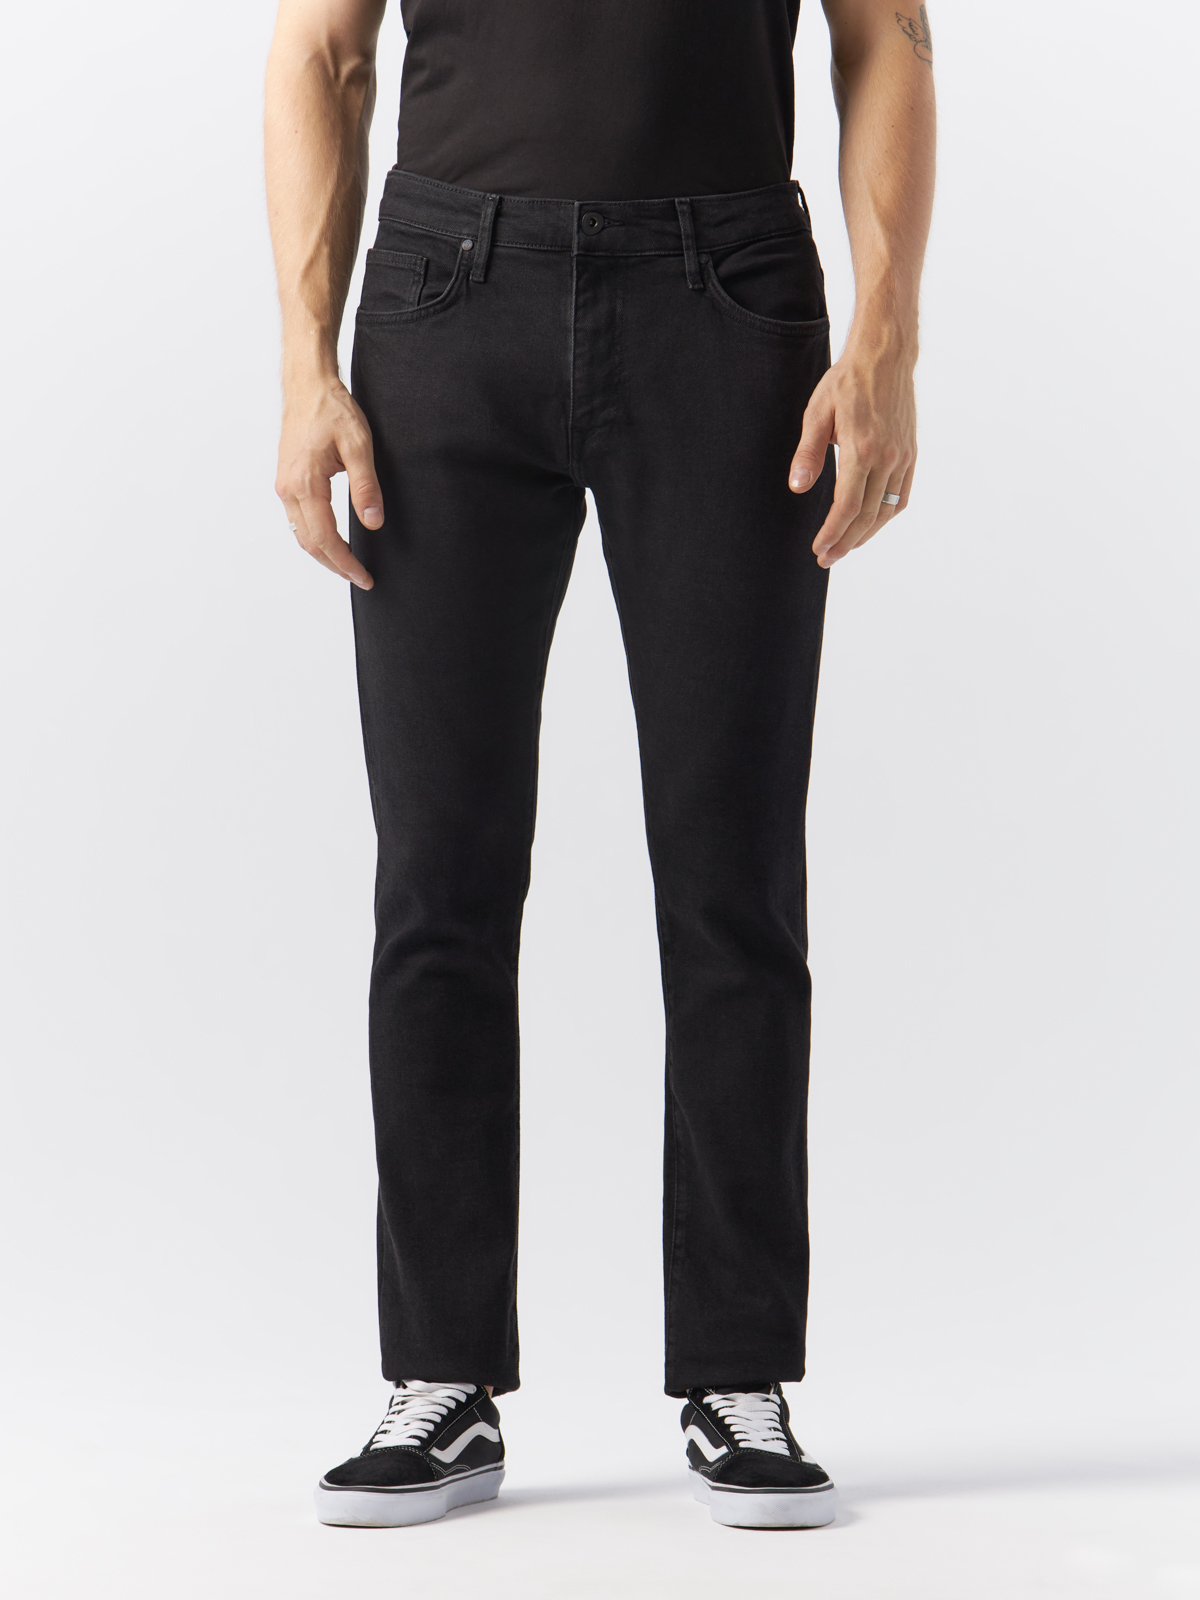 Джинсы Cross Jeans для мужчин, E 185-171, размер 31/32, чёрные